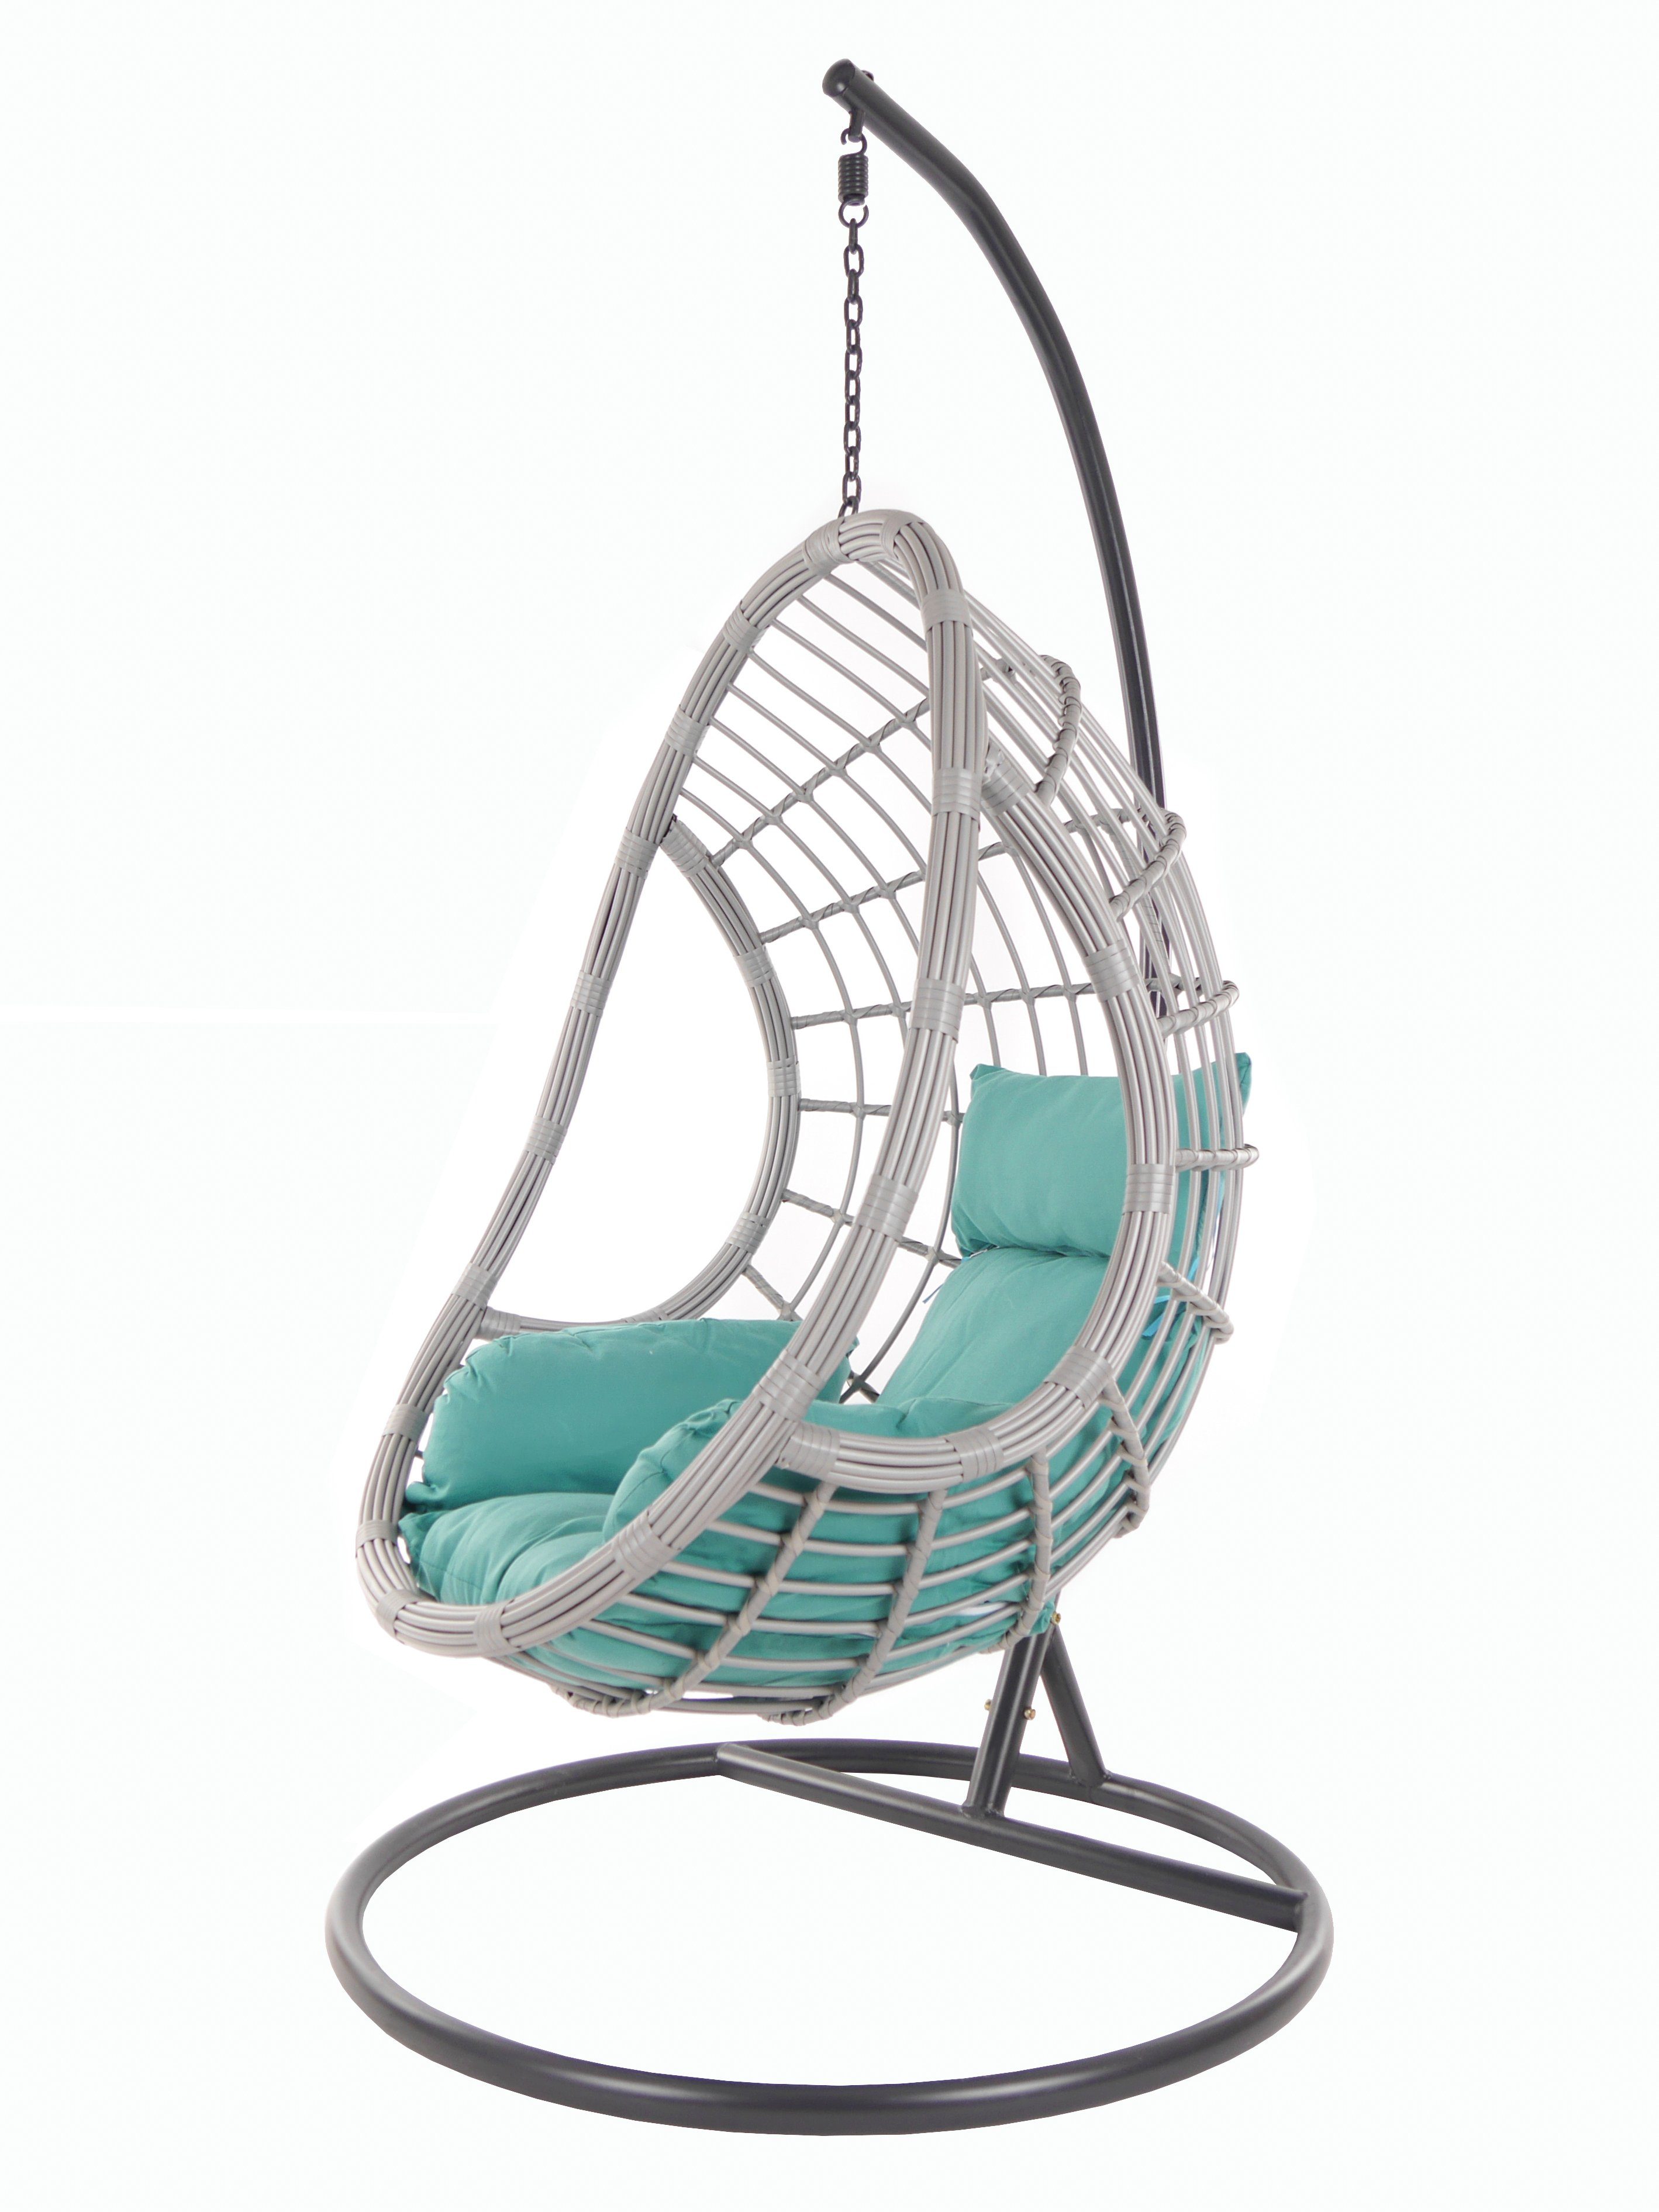 ocean) Gestell Chair, PALMANOVA Kissen, KIDEO meeresblau Schwebesessel Loungemöbel lightgrey, und Hängesessel Swing (5060 mit